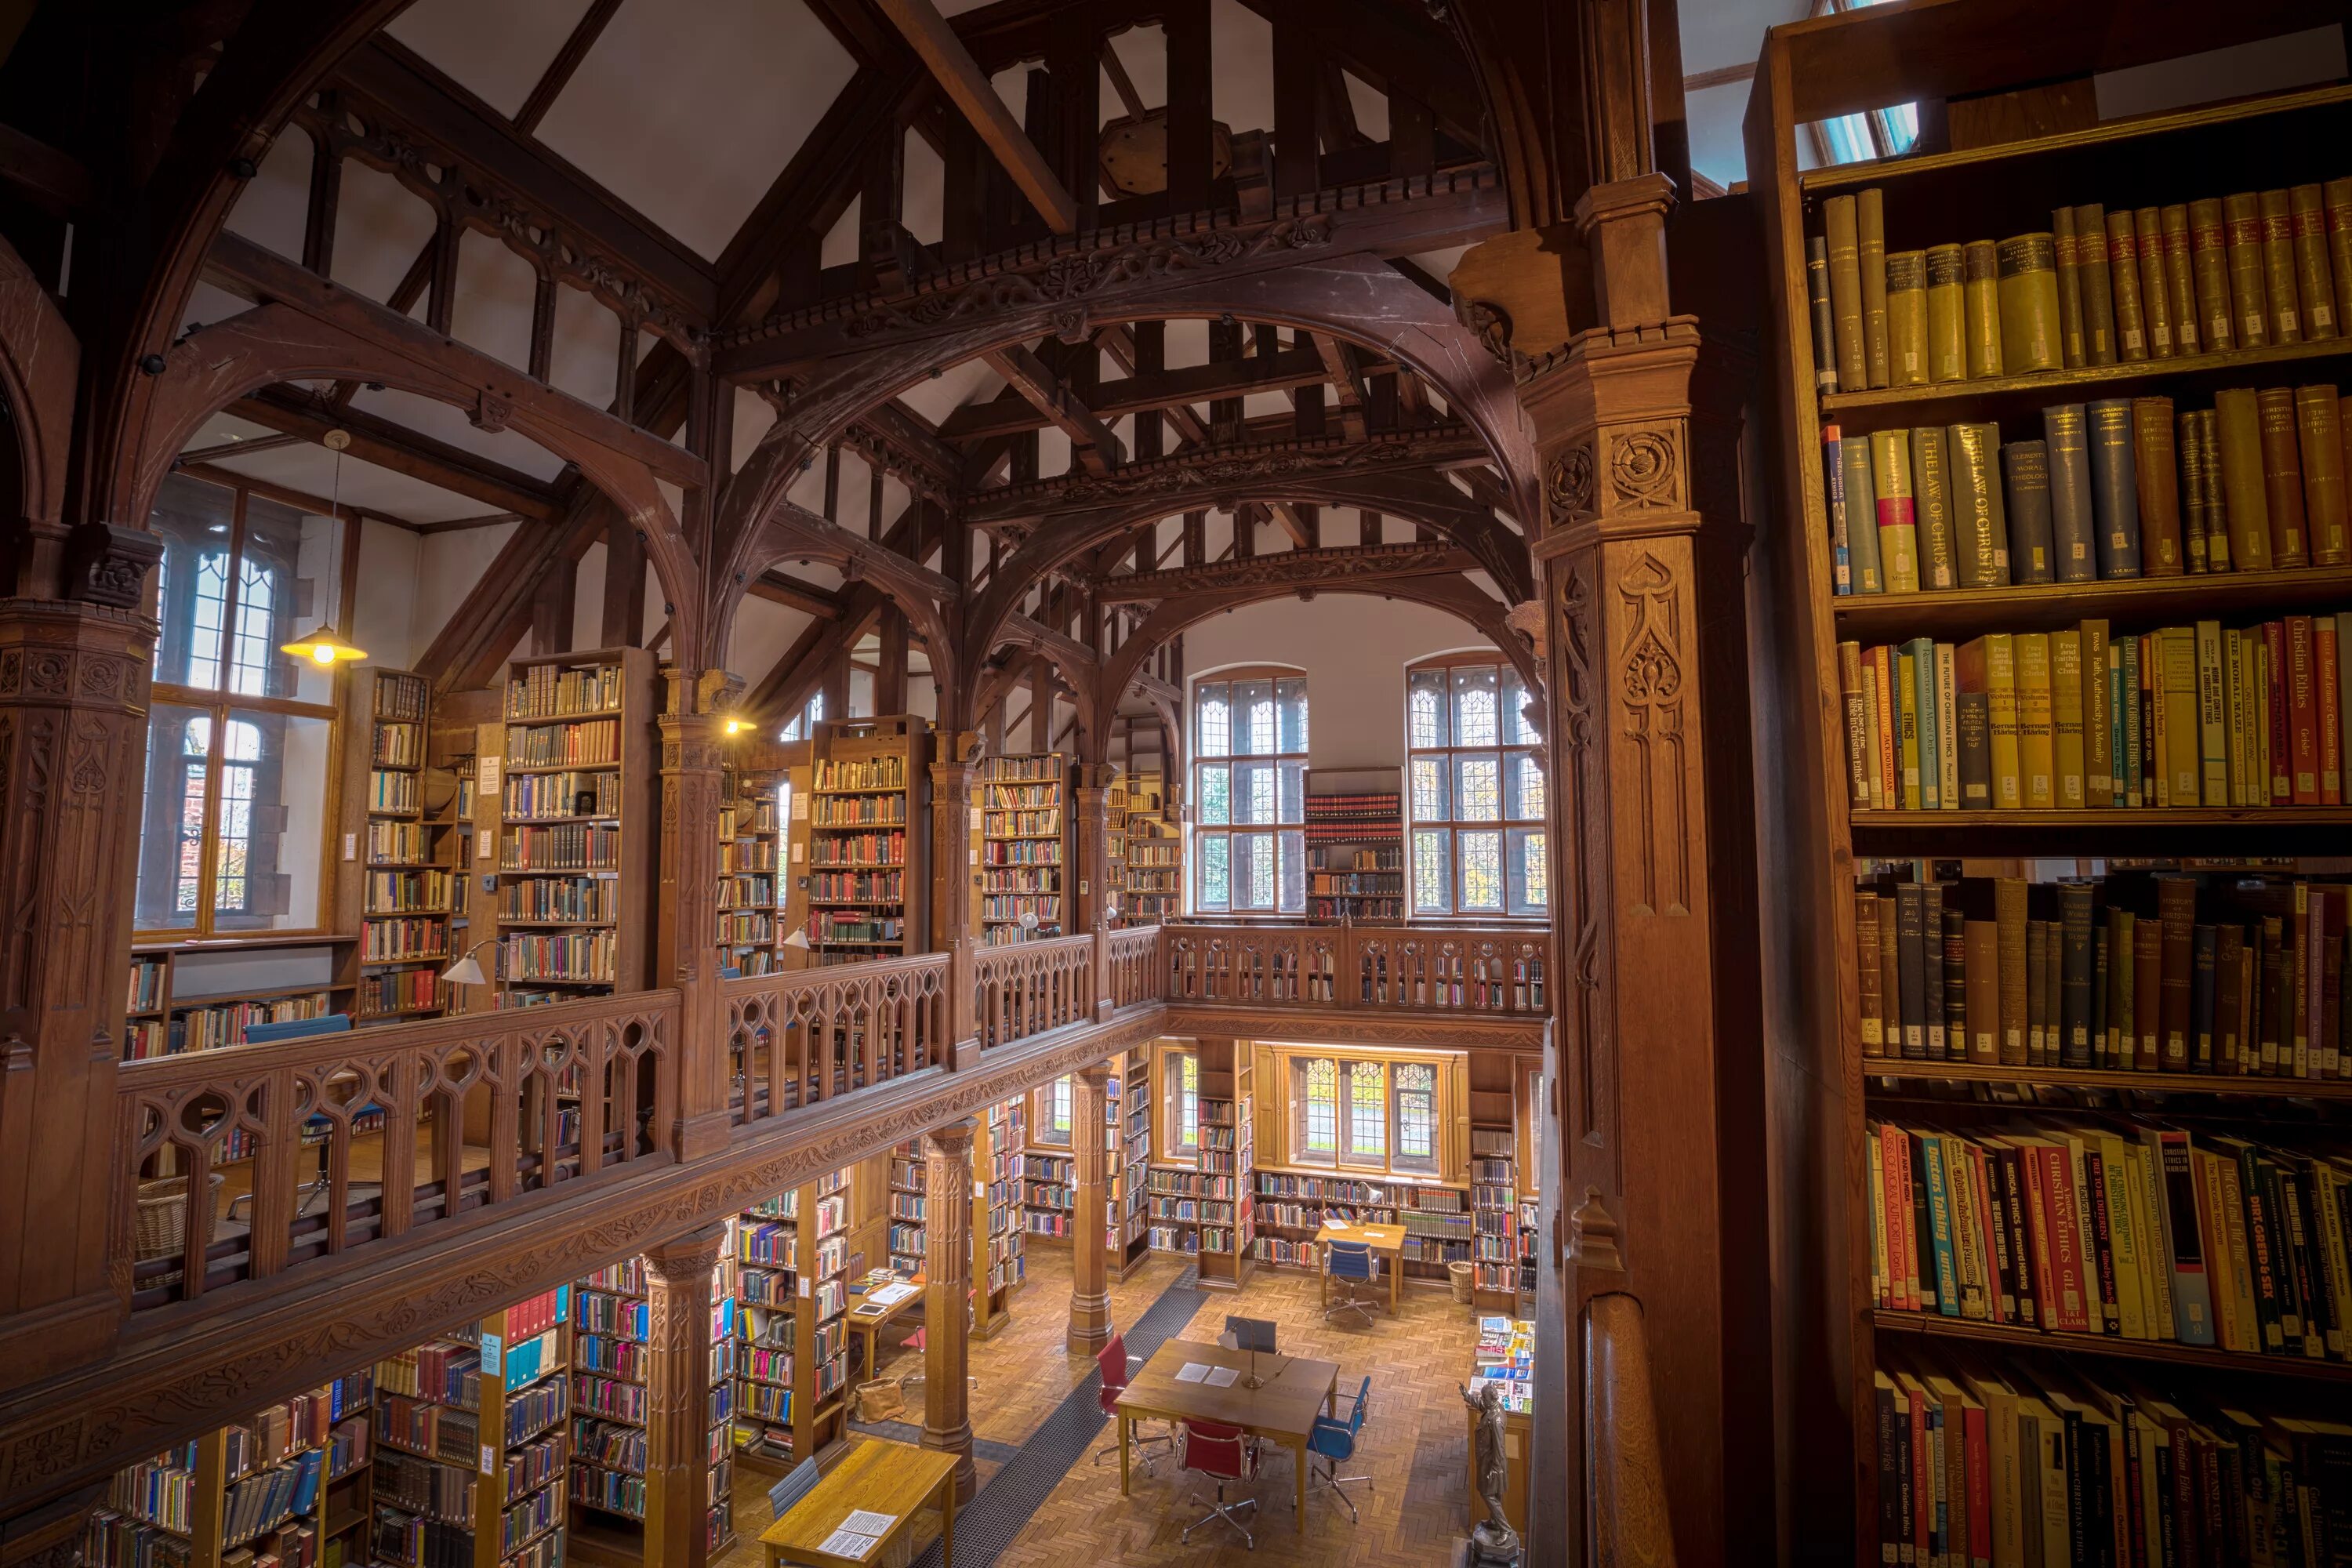 Правая библиотека. Библиотека Джорджа Пибоди, Балтимор, США. Библиотека аббатства Адмонт, Австрия. Старинная библиотека.